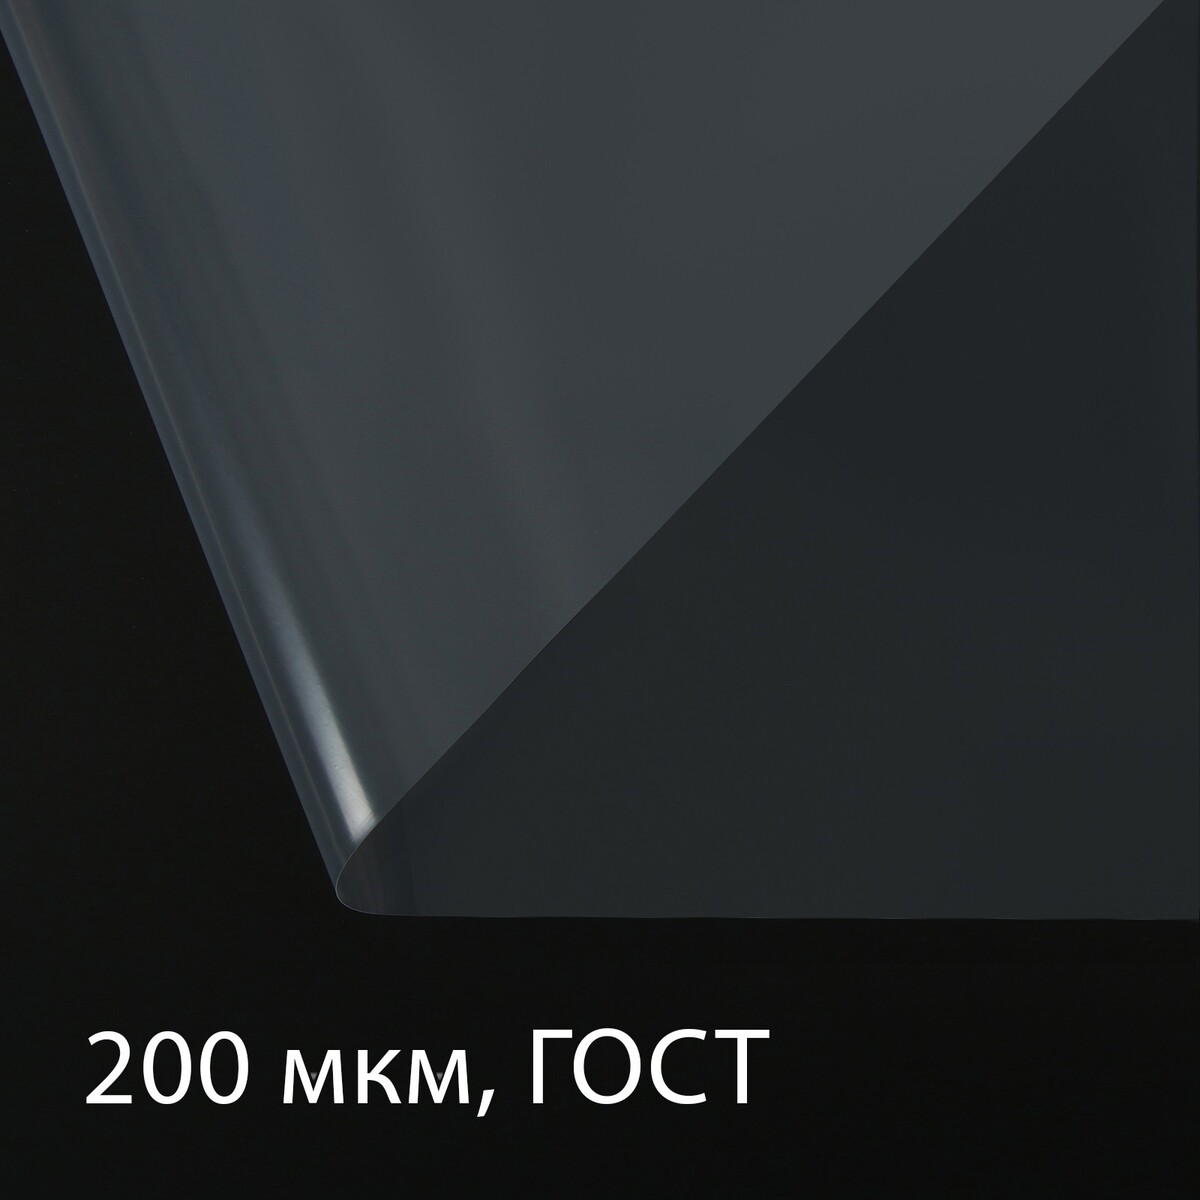 Пленка полиэтиленовая, толщина 200 мкм, прозрачная, 10 × 3 м, рукав (1.5 м × 2), гост 10354-82